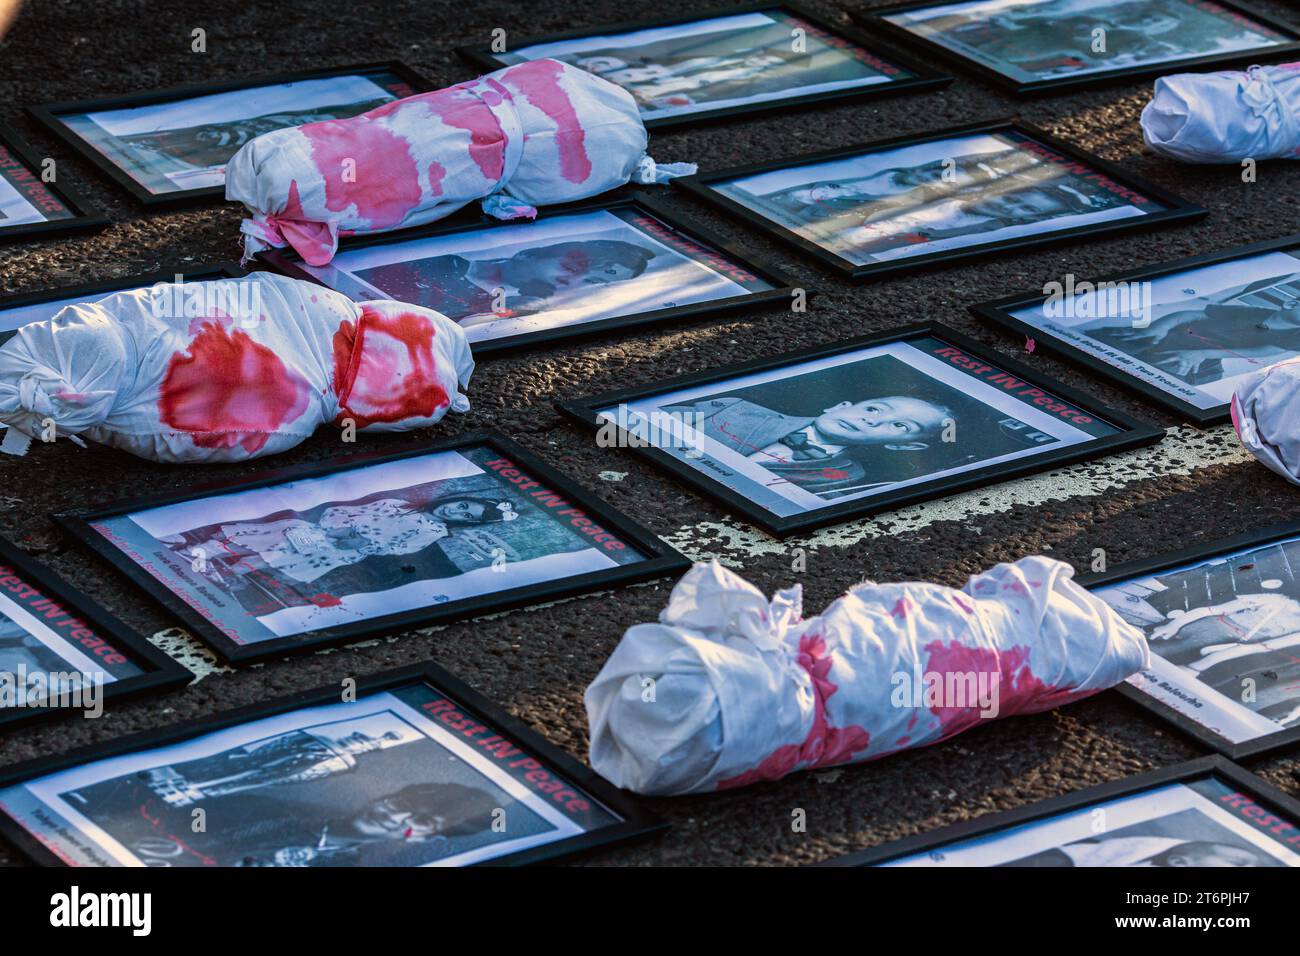 11 novembre 2023. Londres, Royaume-Uni.photos d'enfants tués à Gaza placés par des manifestants devant Nine Elms le jour de l'Armistice appelant à un cessez-le-feu immédiat au Moyen-Orient, où des milliers de civils innocents, dont de nombreux enfants, sont morts à la fois dans l'attaque du Hamas contre Israël et dans des attaques aériennes extrêmement punitives qui ont dévasté de vastes zones de Gaza.Credit image : © Horst Friedrichs Banque D'Images